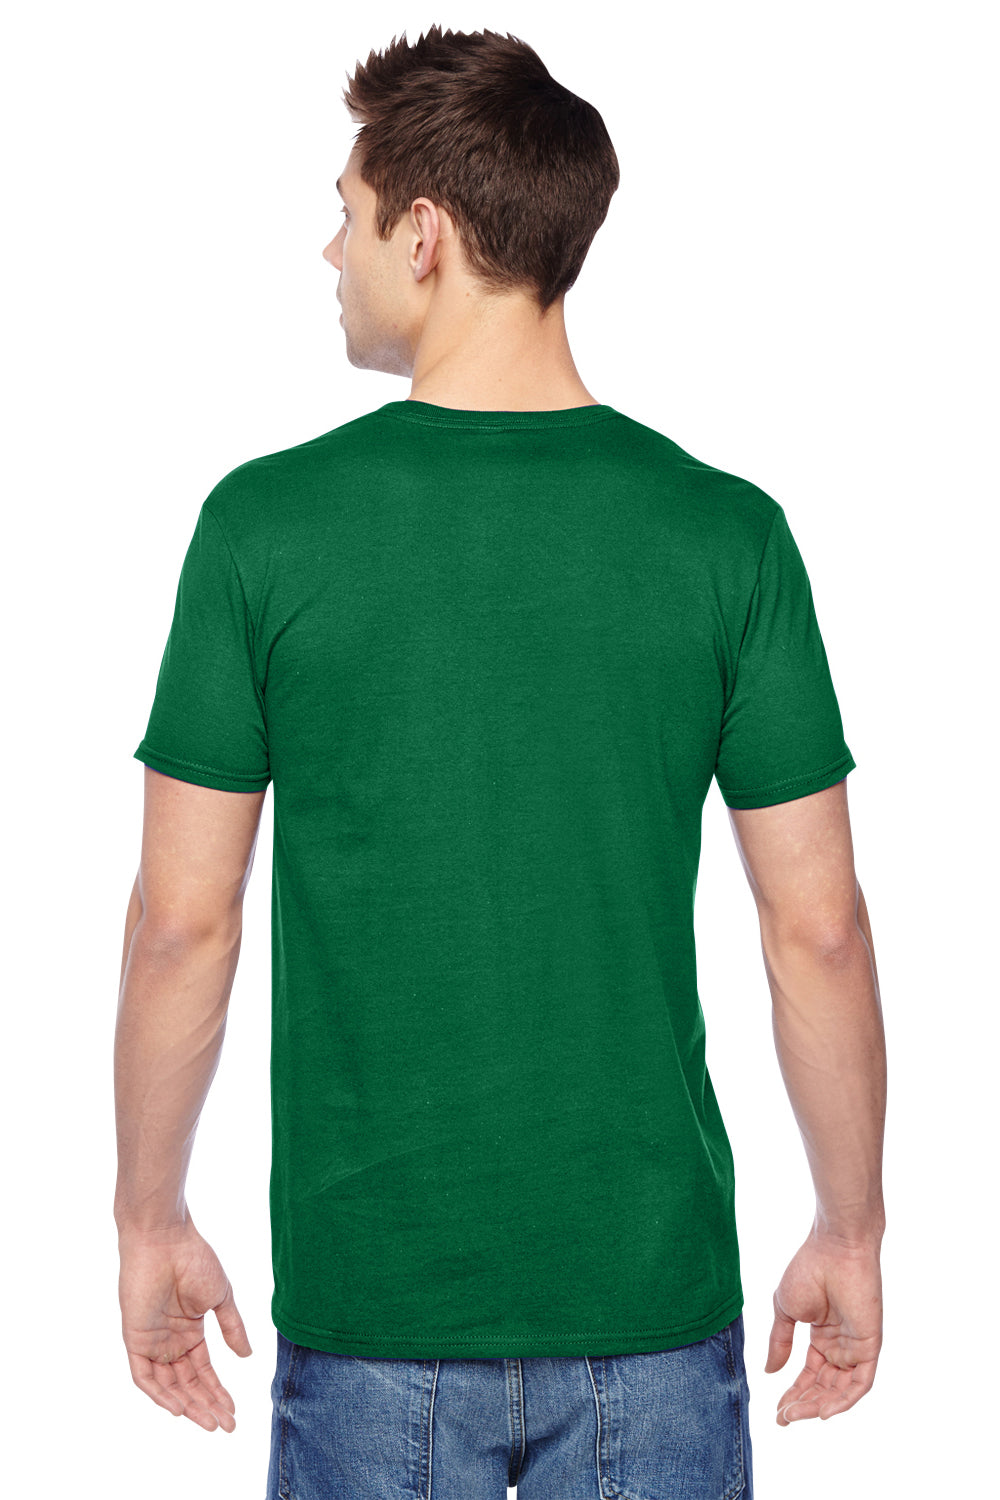 Fruit Of The Loom SF45R Mens Sofspun Jersey Short Sleeve Crewneck T-Shirt Clover Green Back